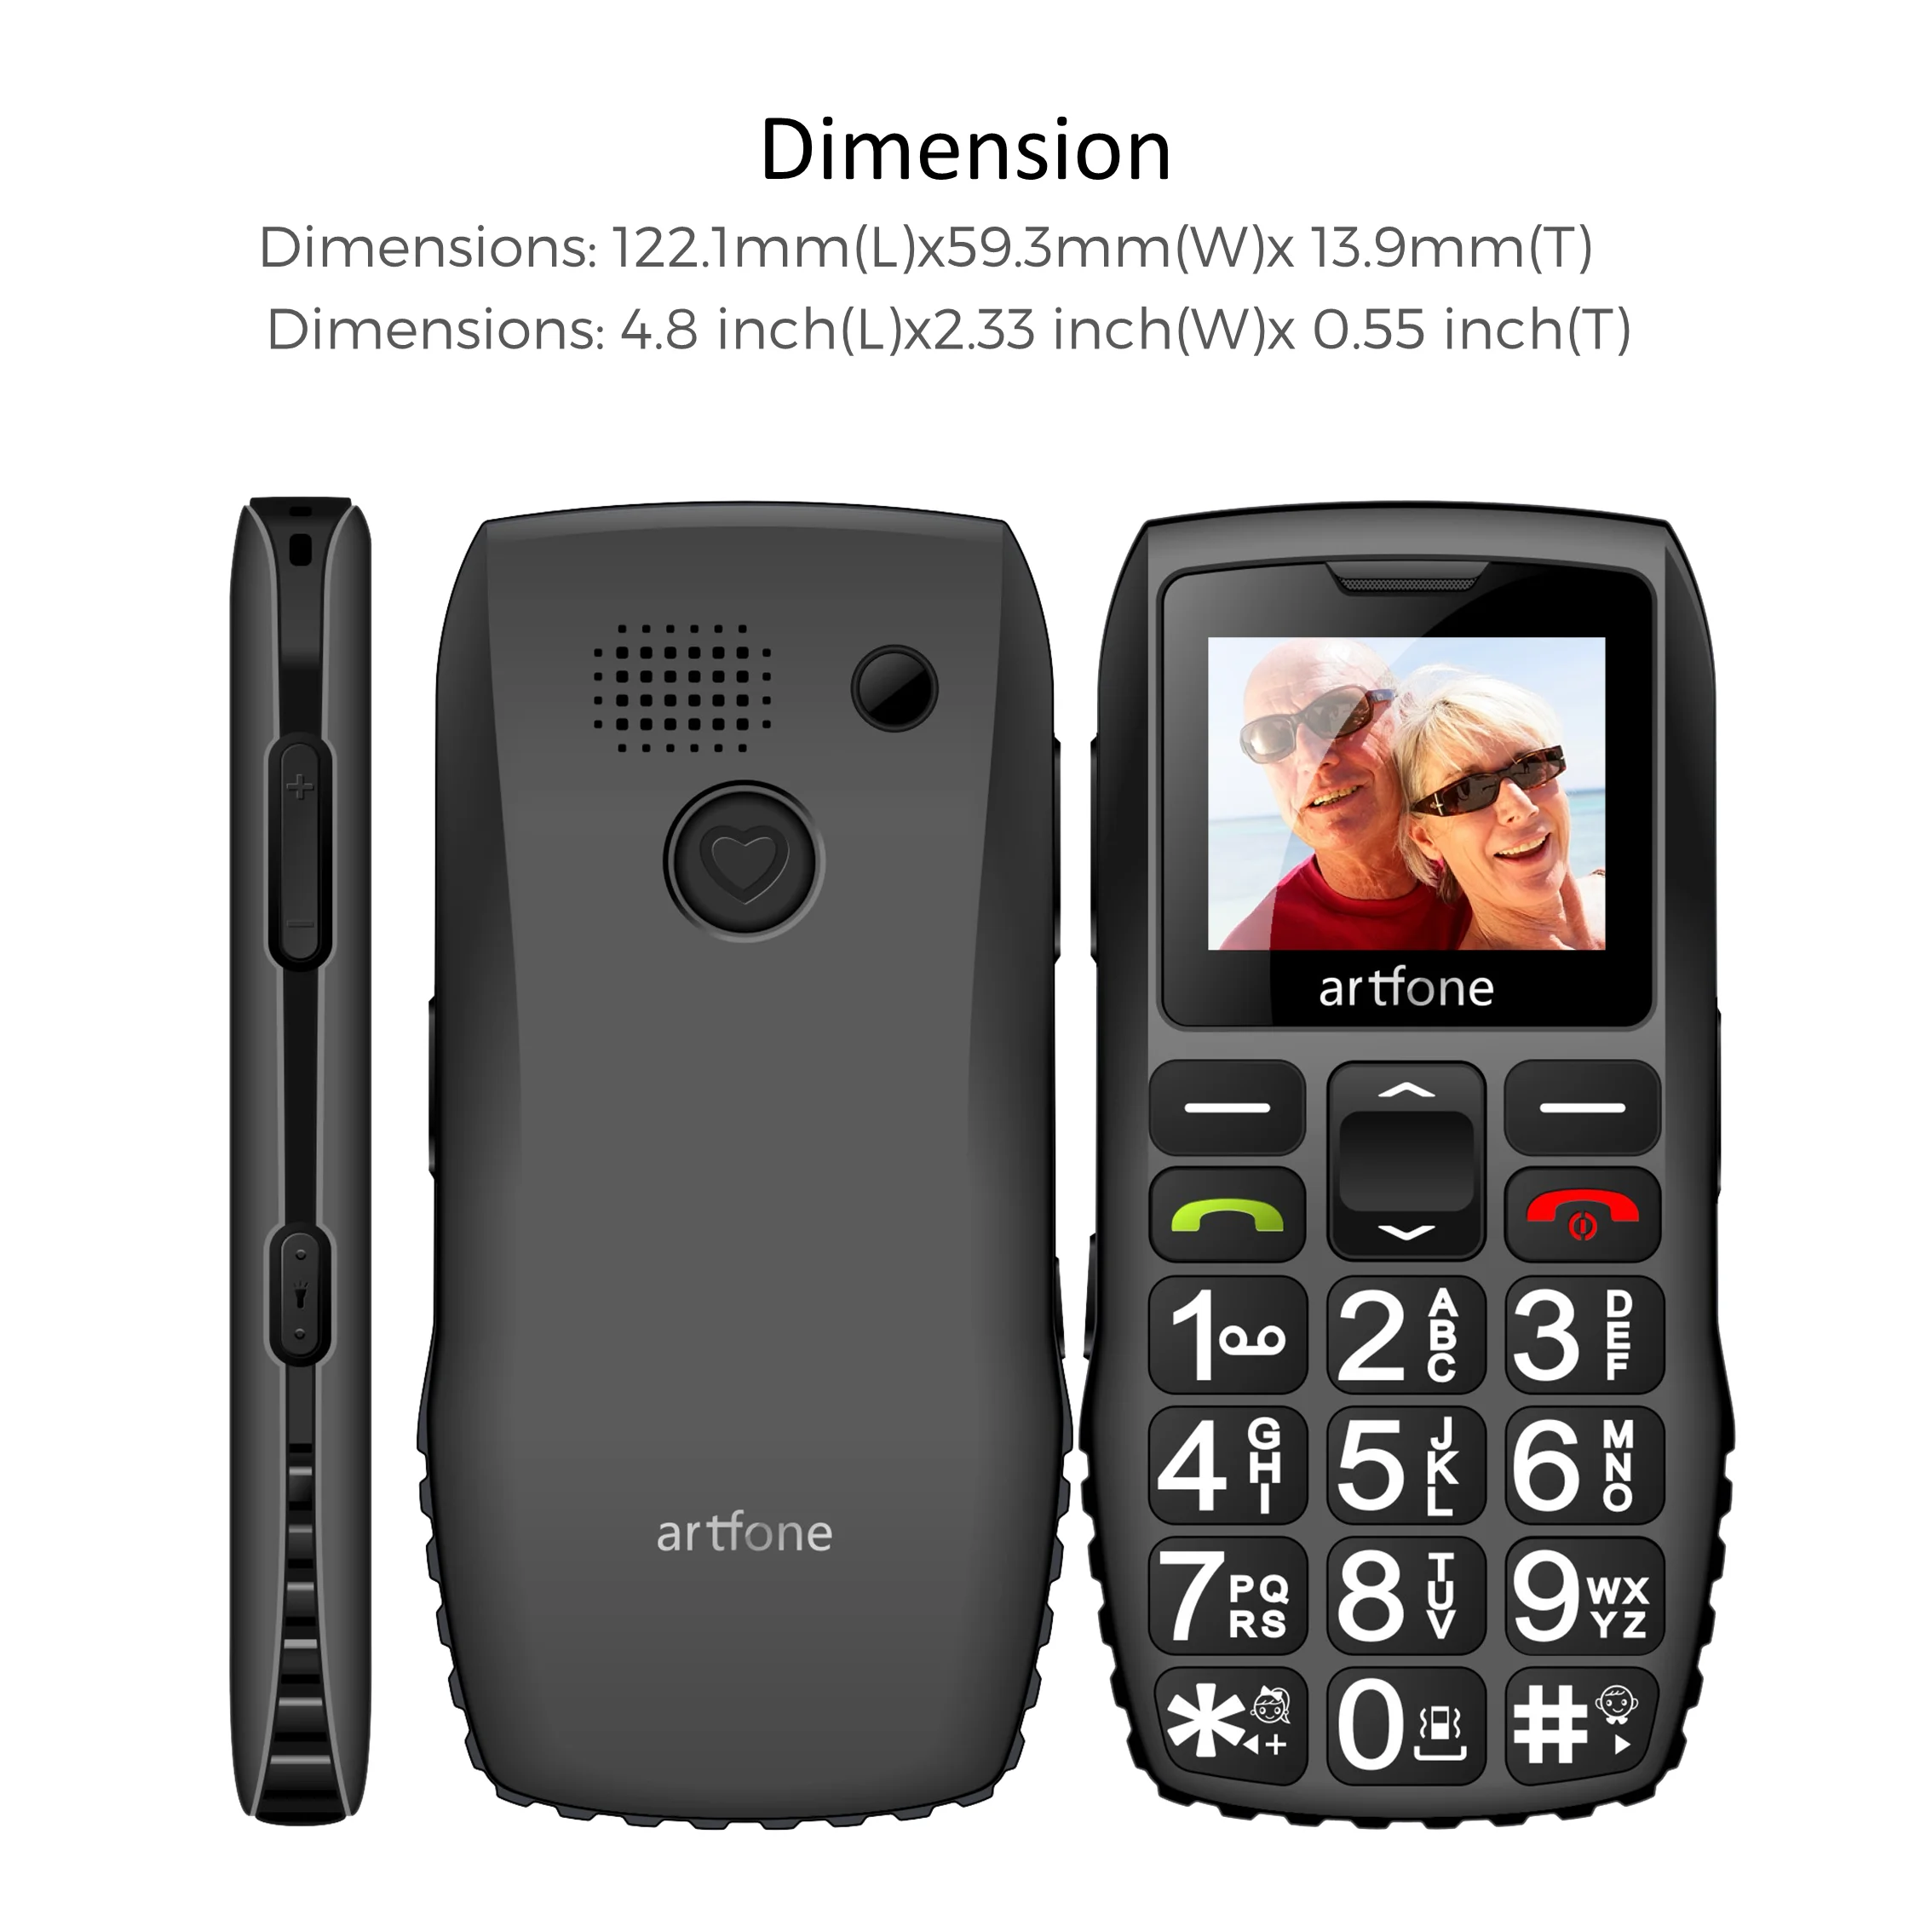 Большая кнопка для пожилых людей, старый телефон artfone C1 с двумя SIM-картами, аккумулятор 1400 мАч, разблокированный телефон для пожилых людей с ф... от AliExpress RU&CIS NEW